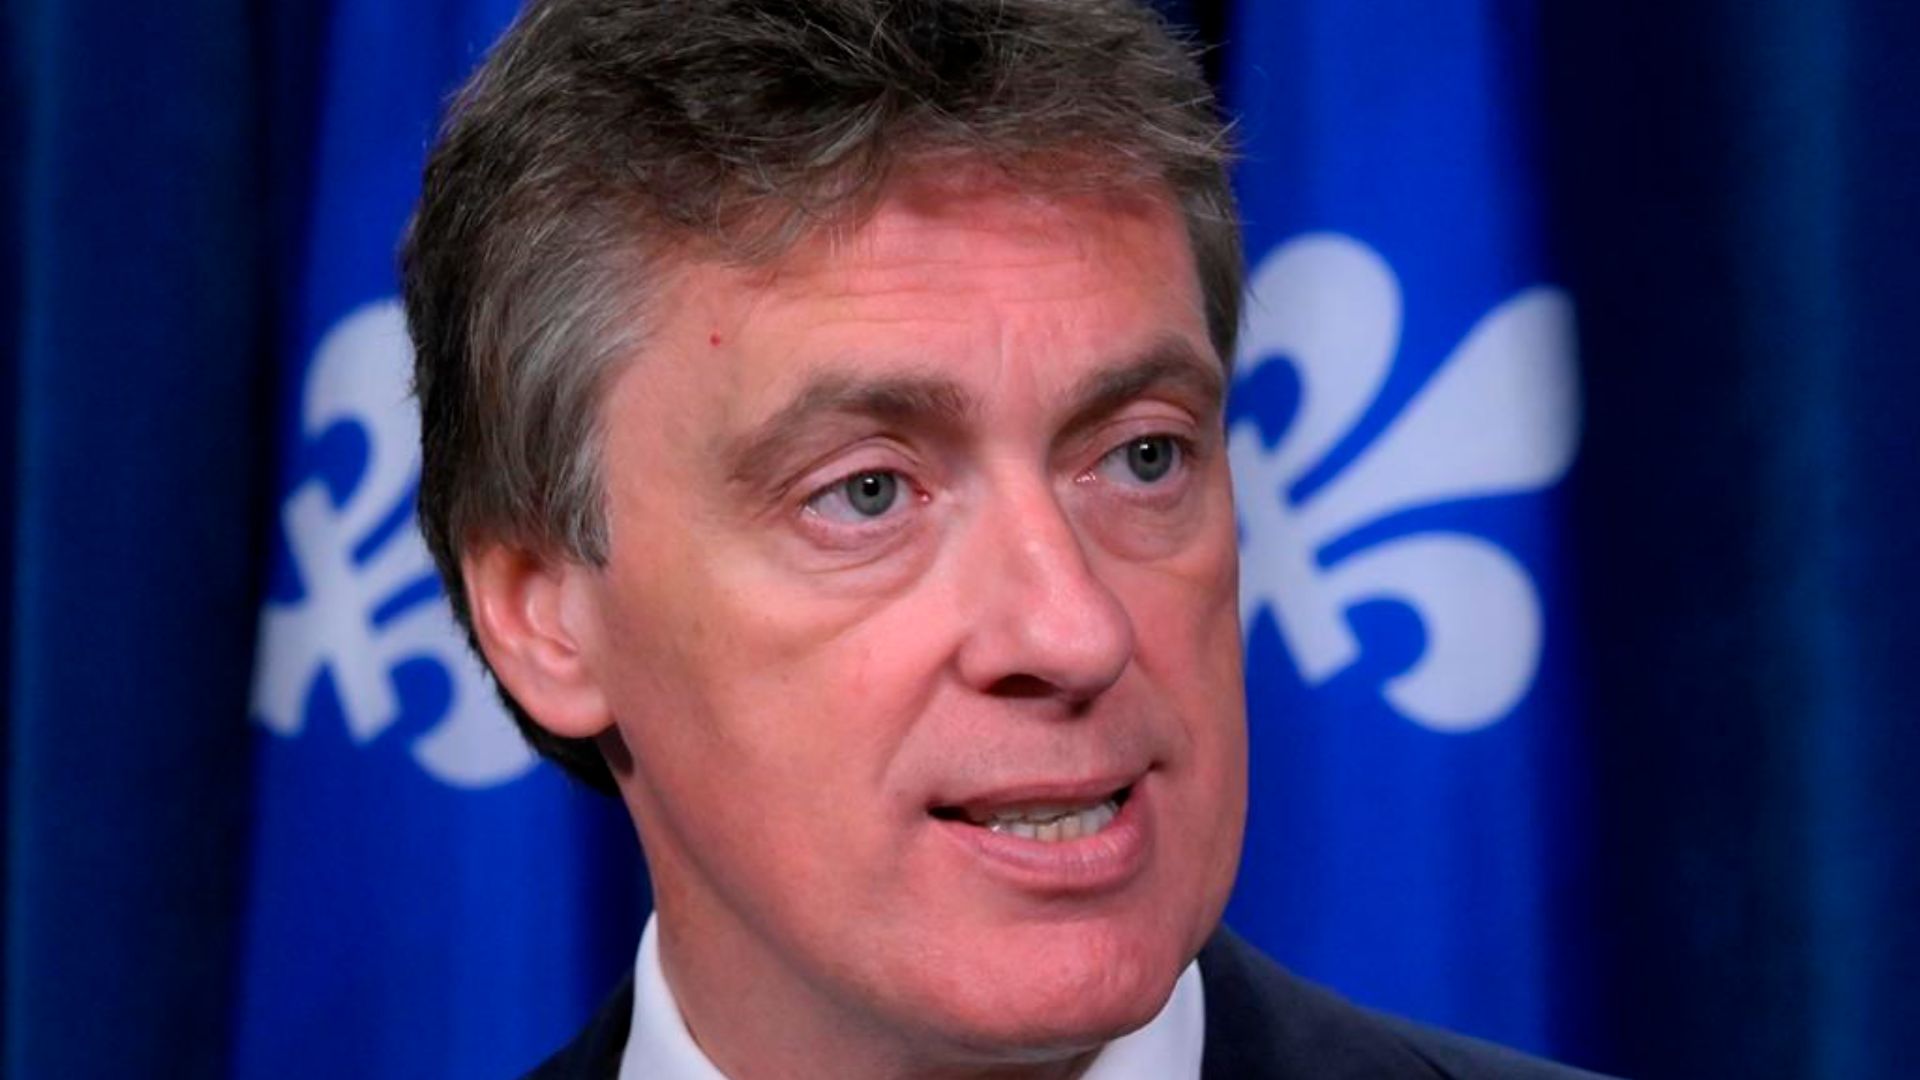 Le premier ministre «François Legault est un péquiste dans le placard qui aime diviser et qui a construit sa carrière politique en divisant les Québécois», a déclaré le chef libéral Marc Tanguay.